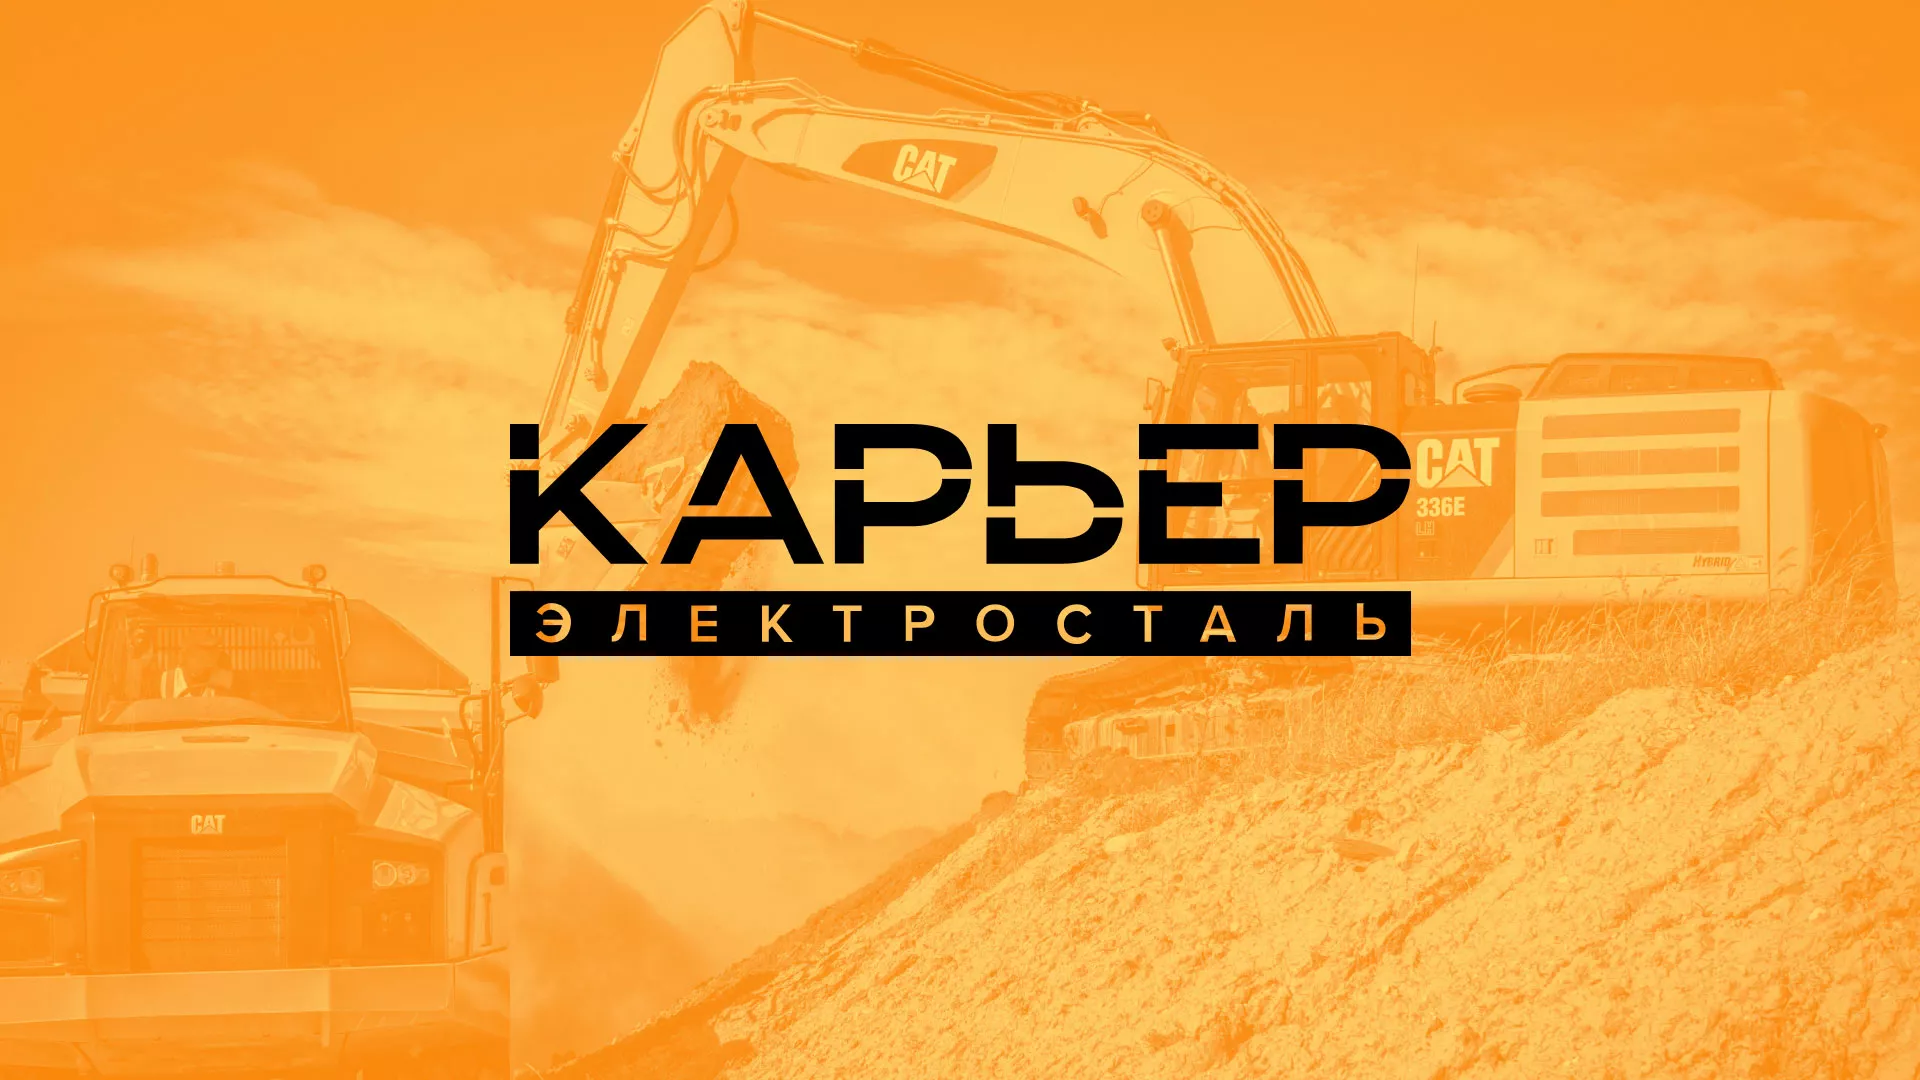 Разработка сайта по продаже нерудных материалов «Карьер» в Жуковке